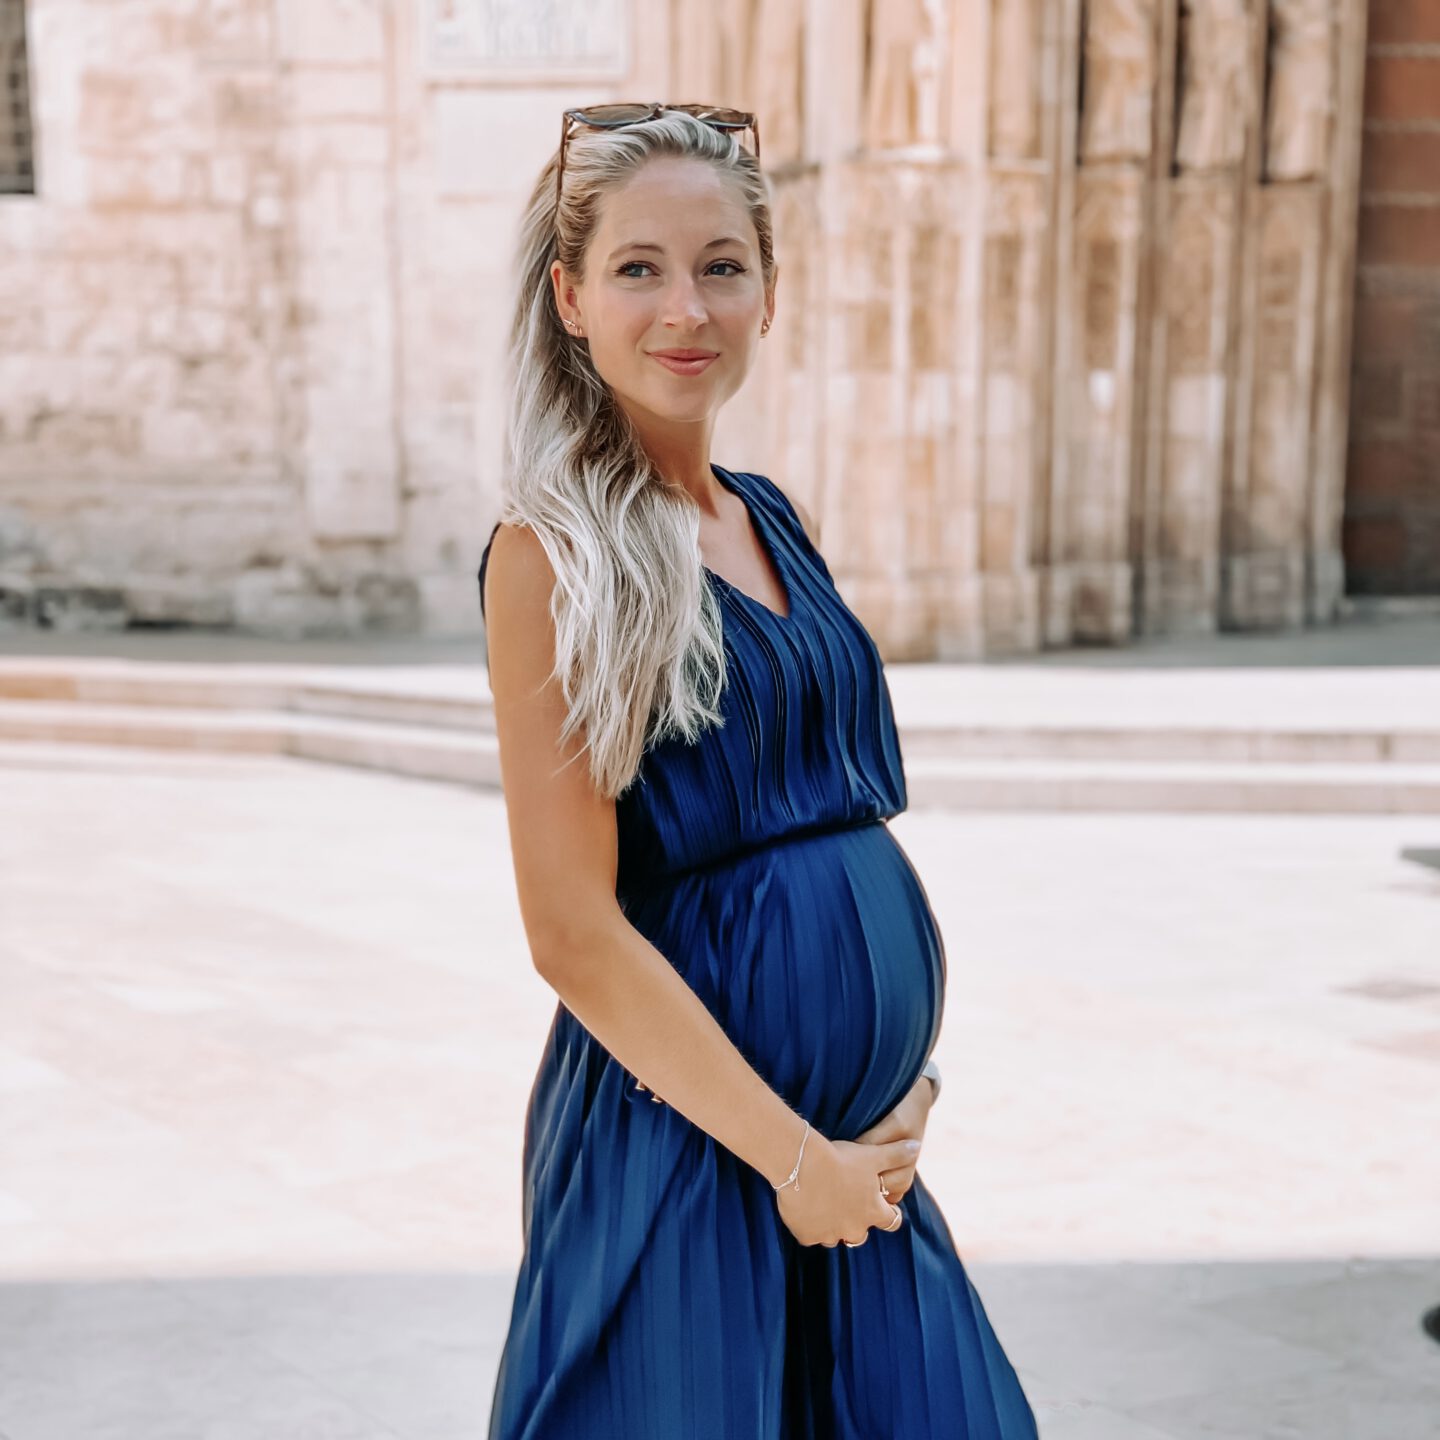 Zwangerschapsupdate: 30 weken zwanger, onrustig én verlof